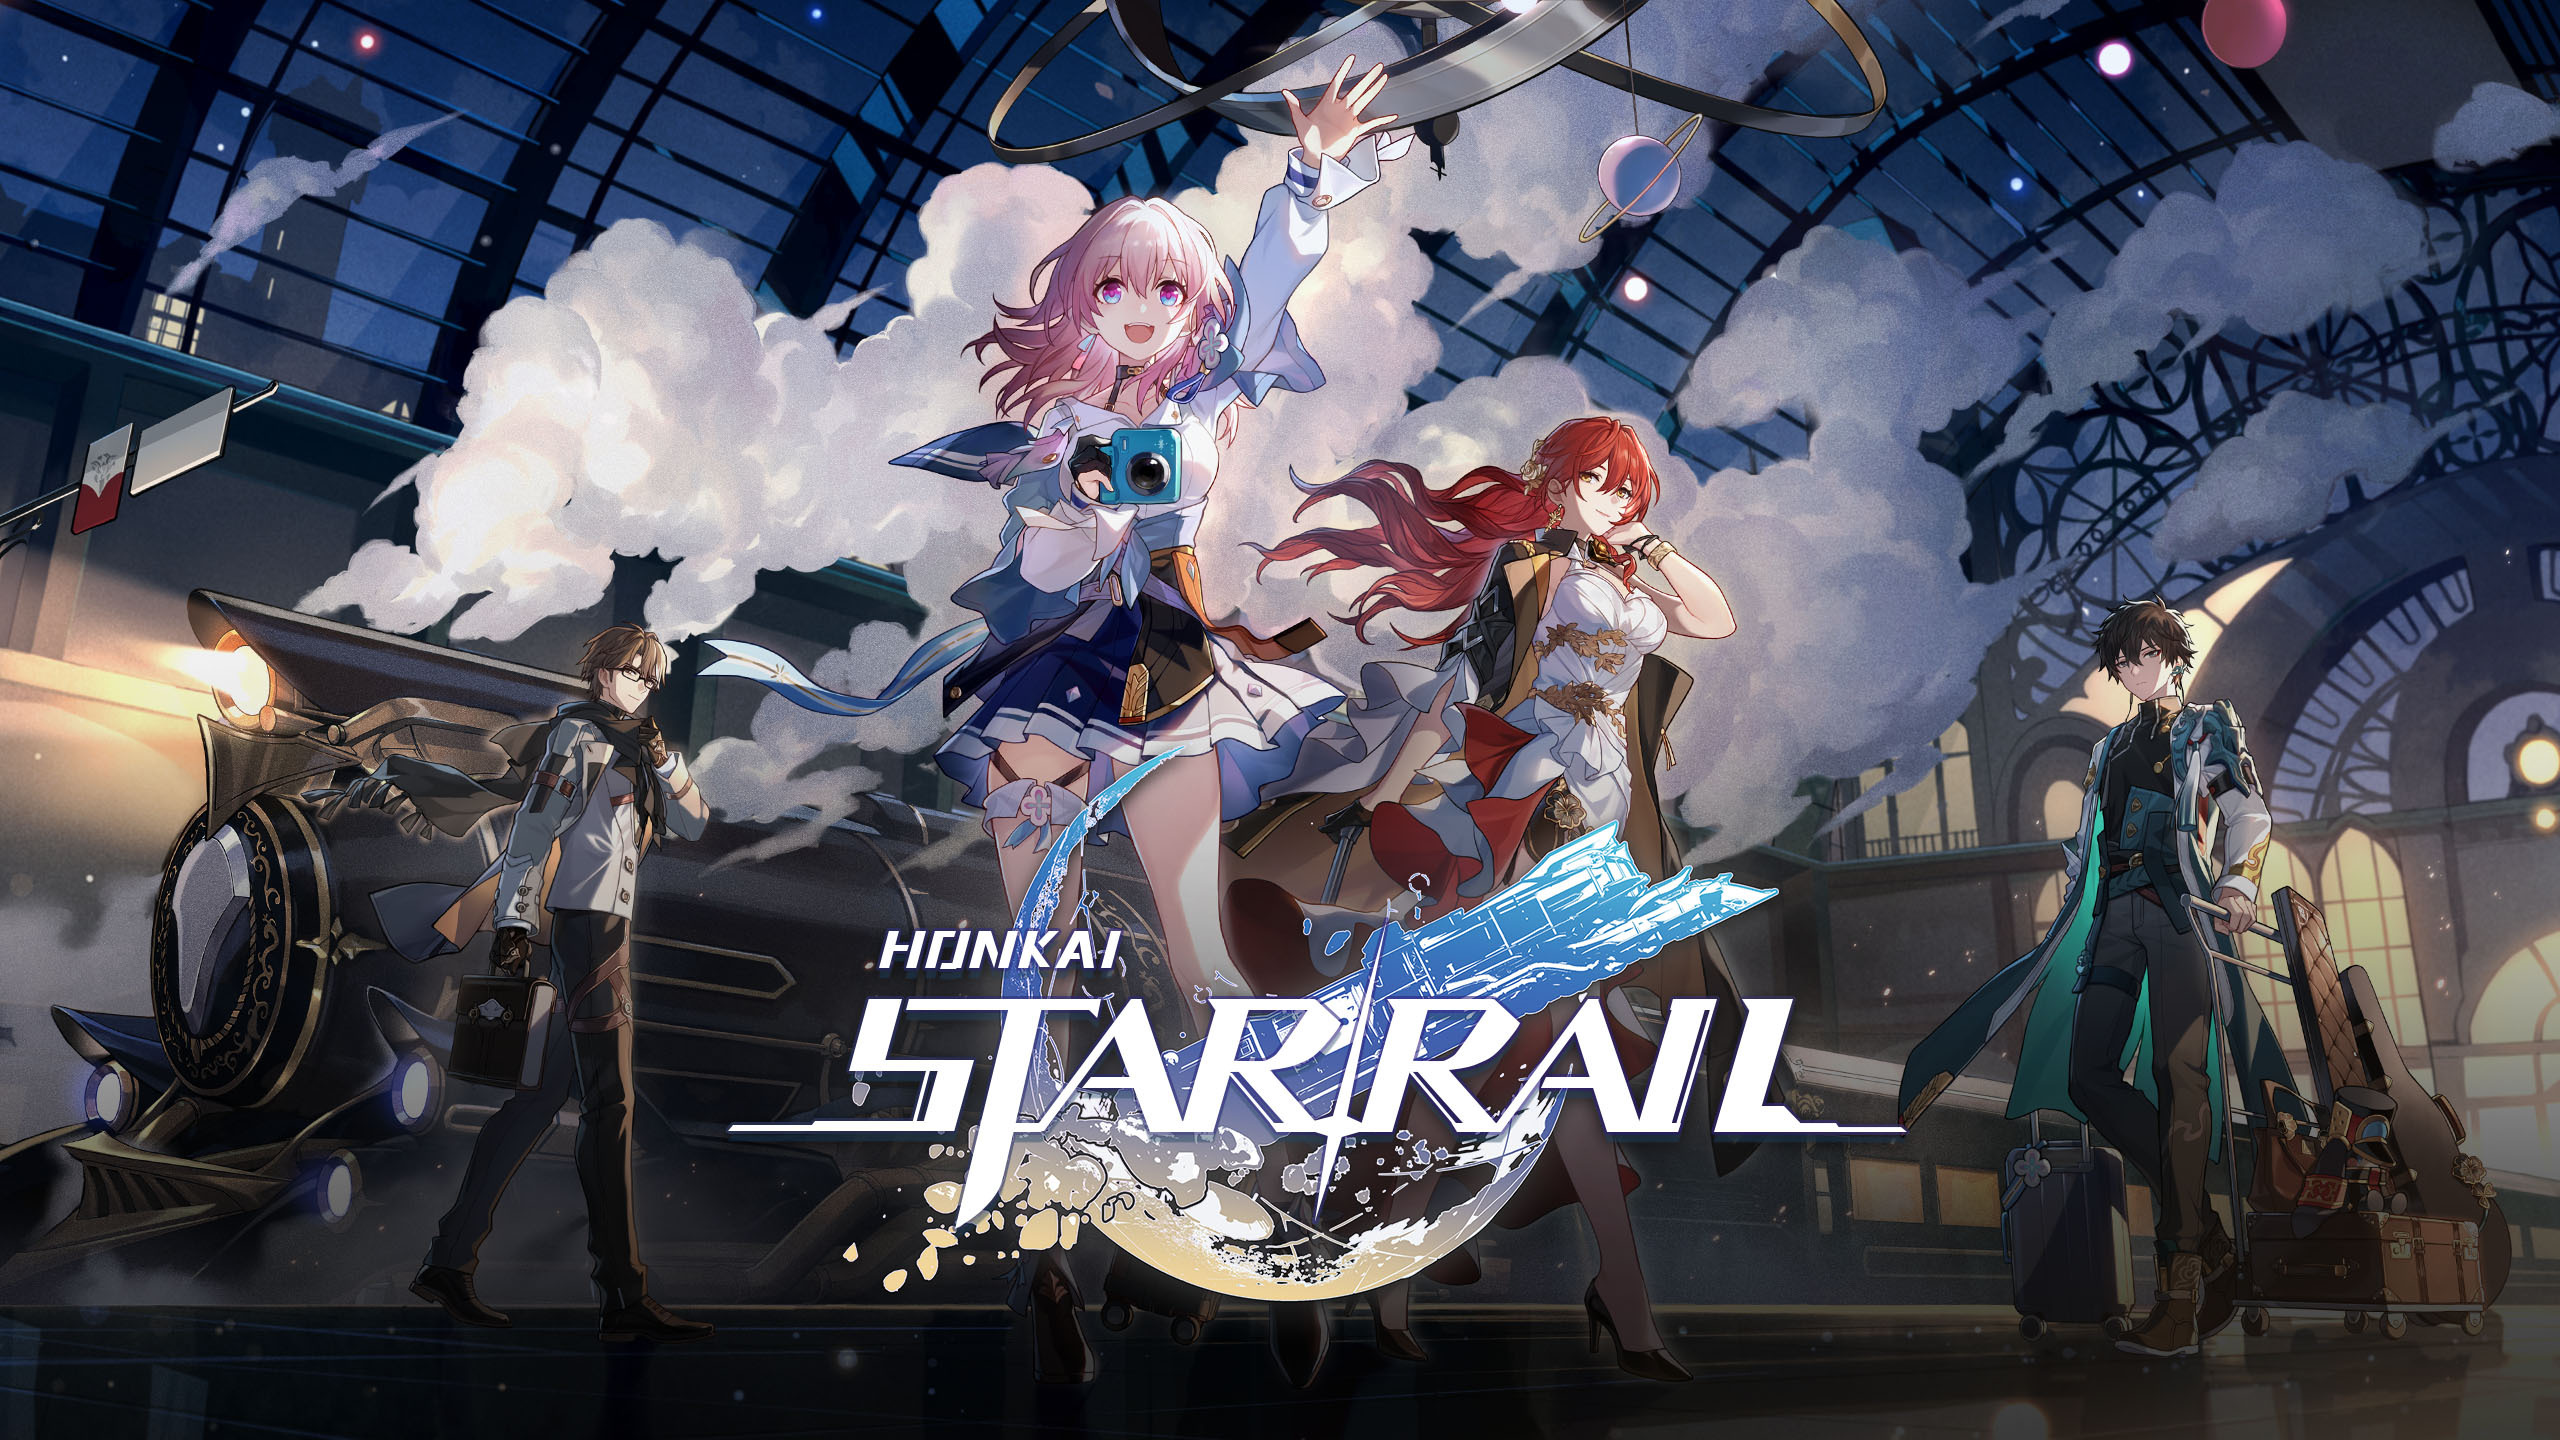 Le 8 juillet, miHoYo Games promet de révéler plus de détails sur la mise à jour 1.2 "Even Immortality Ends" pour Honkai : Star Rail.